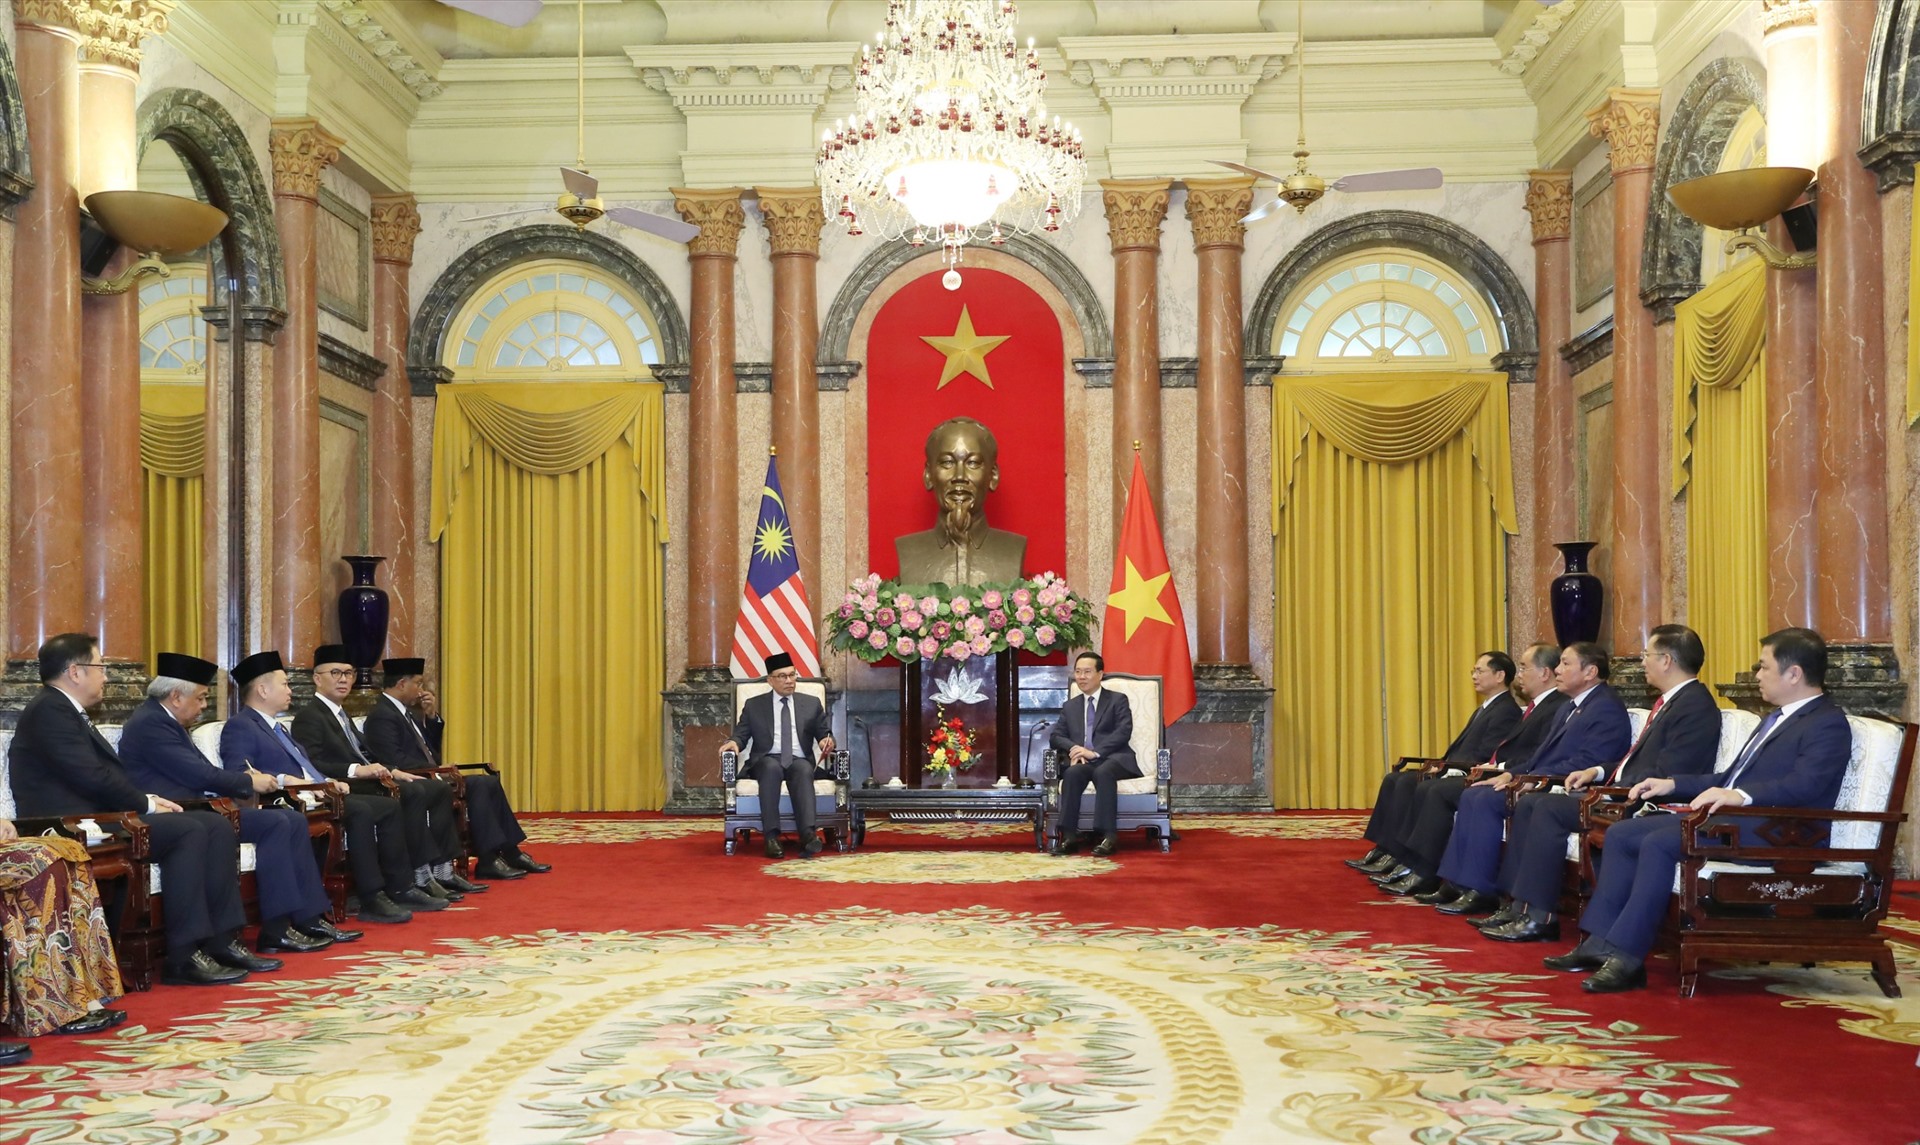 Trong chuyến thăm Việt Nam, Thủ tướng Malaysia Anwar Ibrahim cảm ơn sự đón tiếp trọng thị và nồng hậu phía Việt Nam dành cho đoàn đồng thời đánh giá cao những thành tựu to lớn Việt Nam đạt được trong quá trình phục hồi và phát triển kinh tế - xã hội sau đại dịch COVID-19. Ảnh: TTXVN